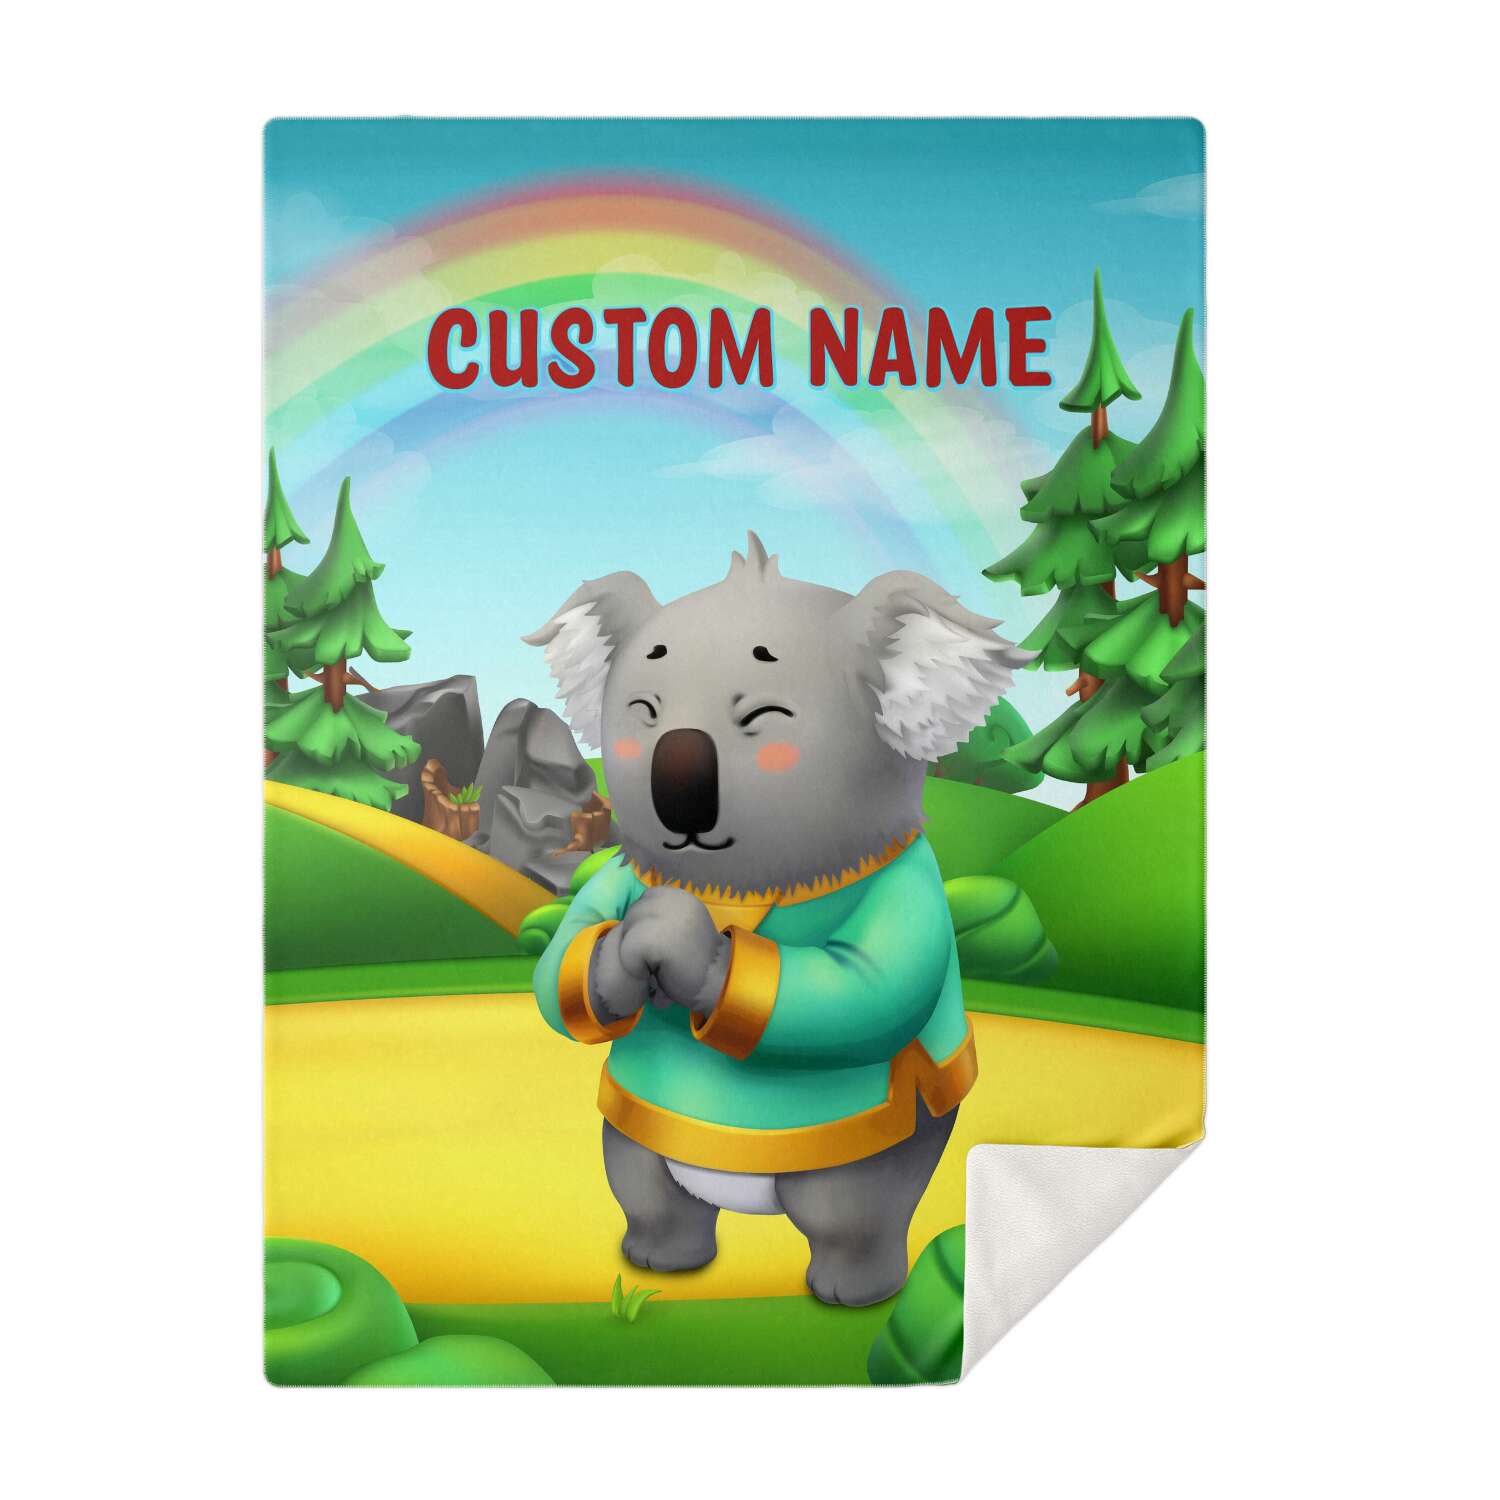 Personalized Name Koala, Animal Blanket for Kids, Custom Name Blanket for Boys & Girls